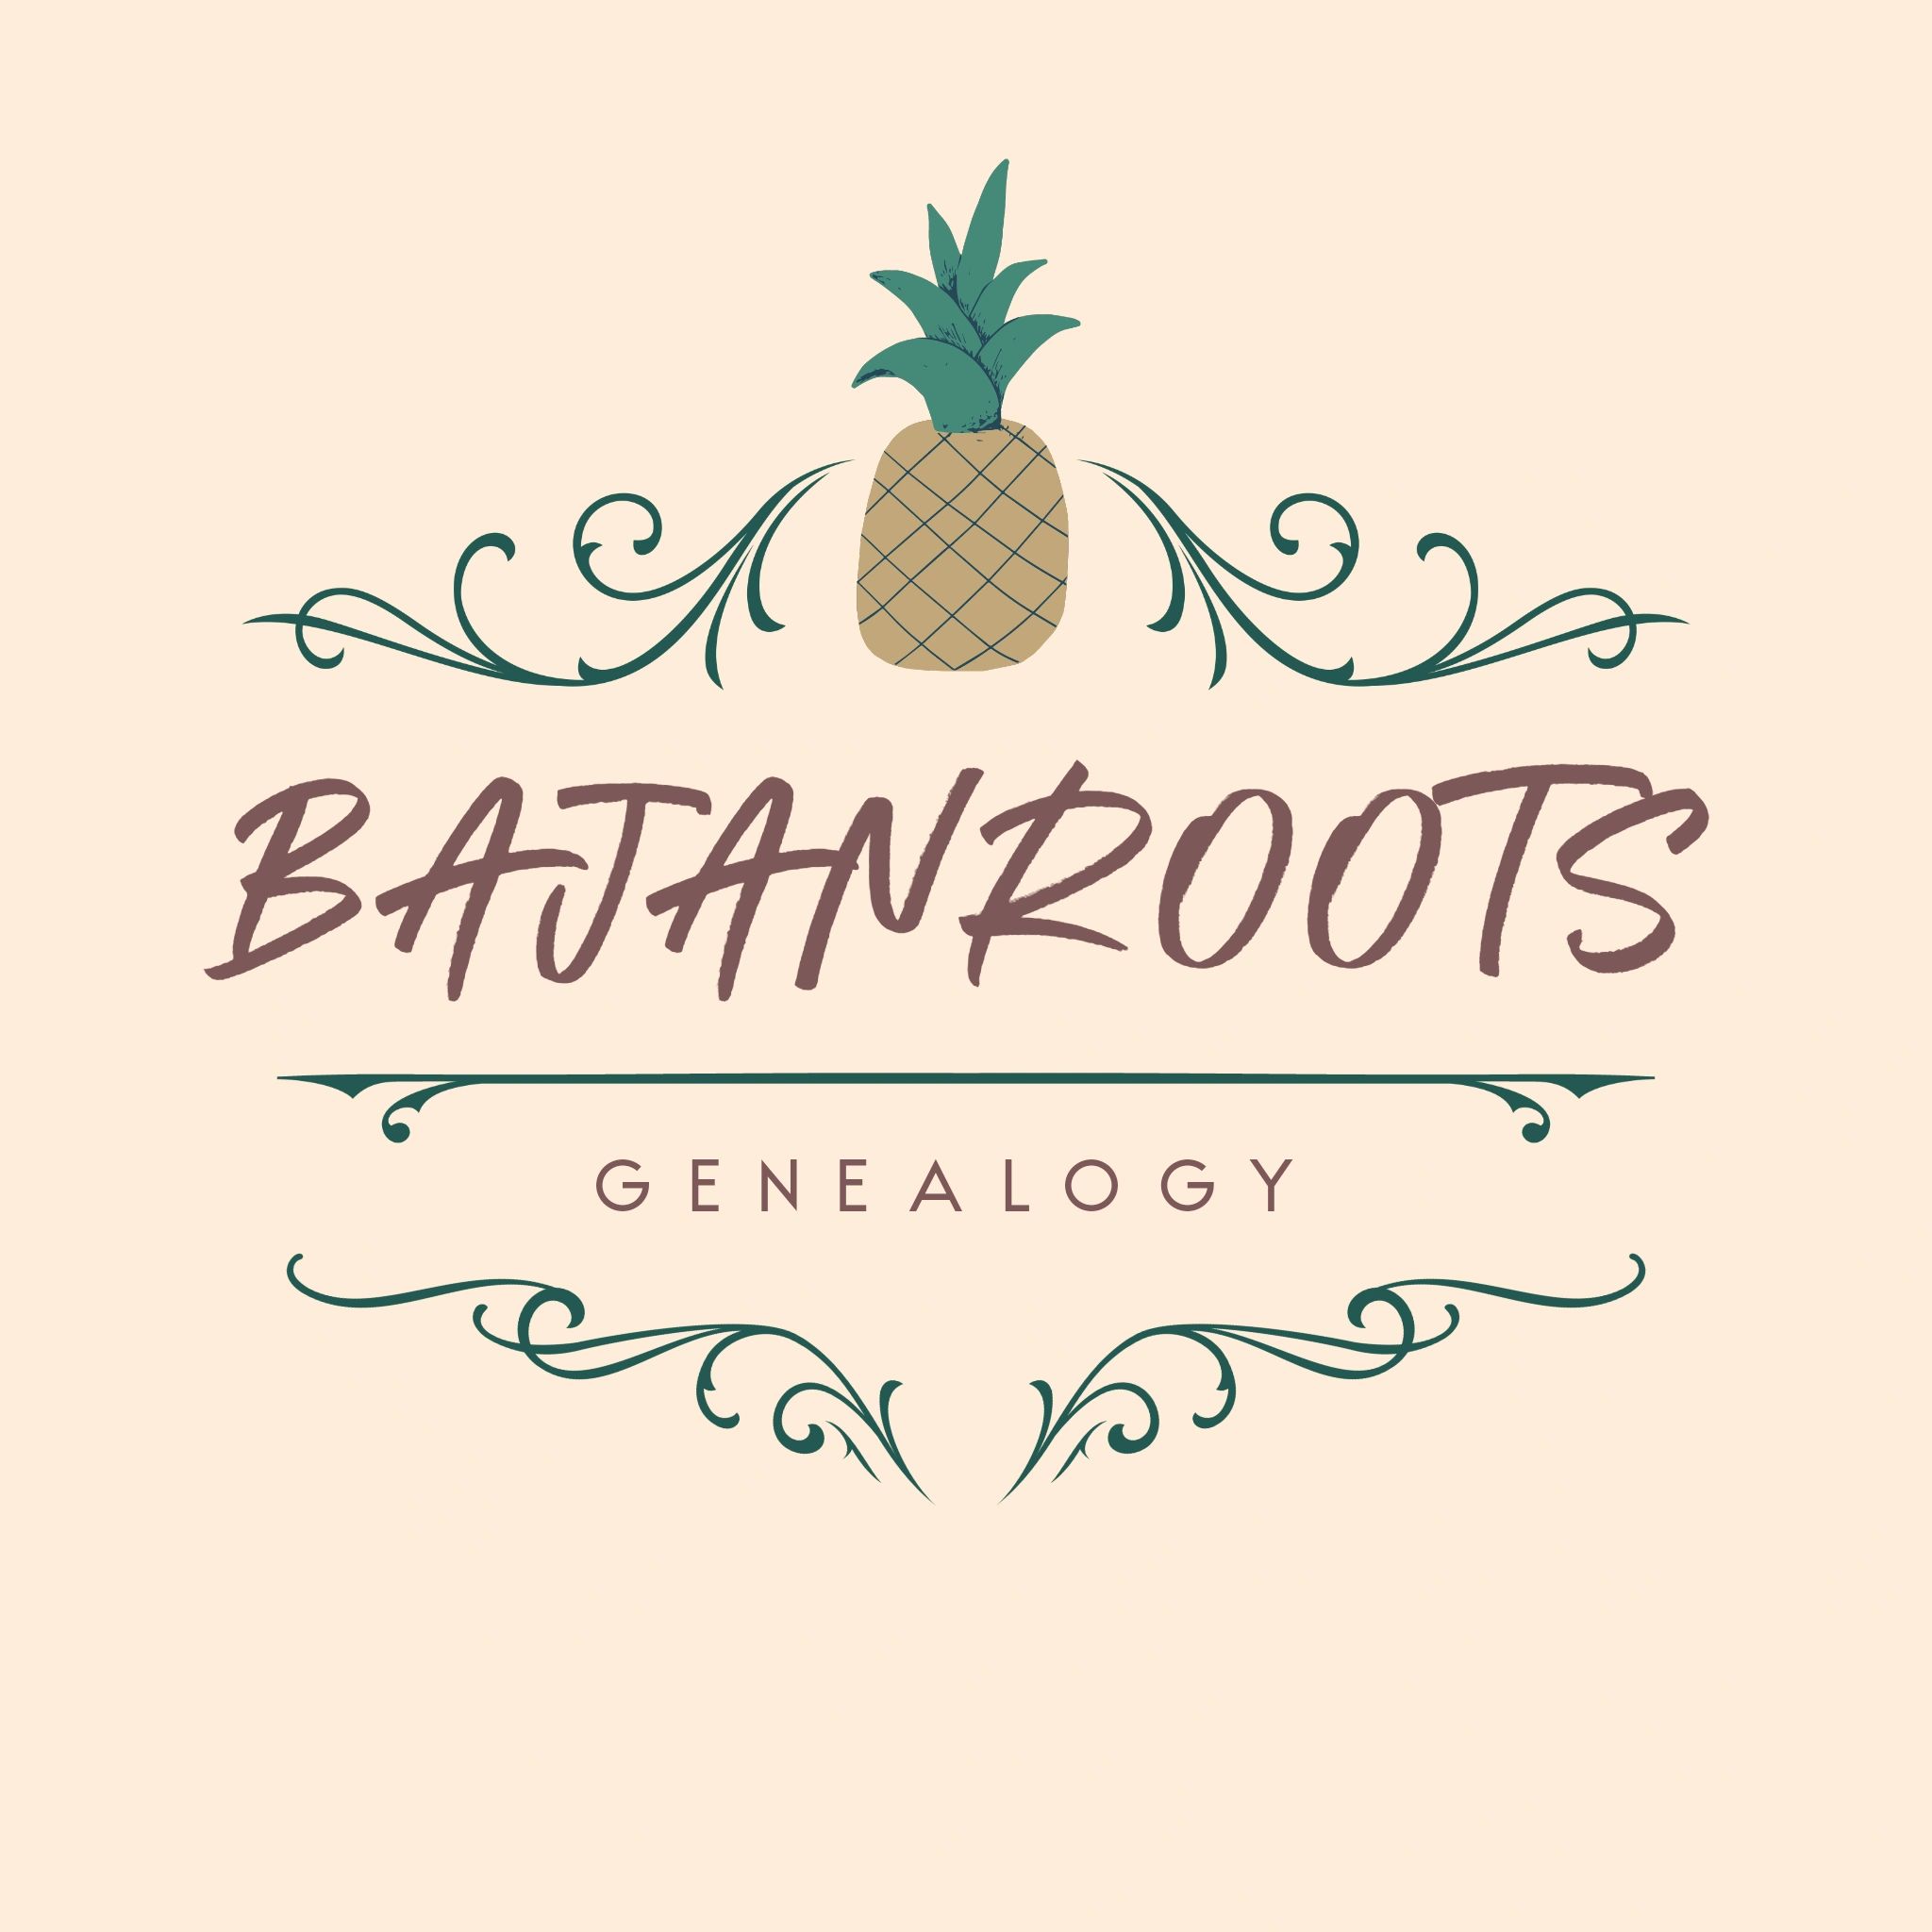 Bajanroots Genealogy Logo
Anita Corbin-Bartholomew, Genealogist